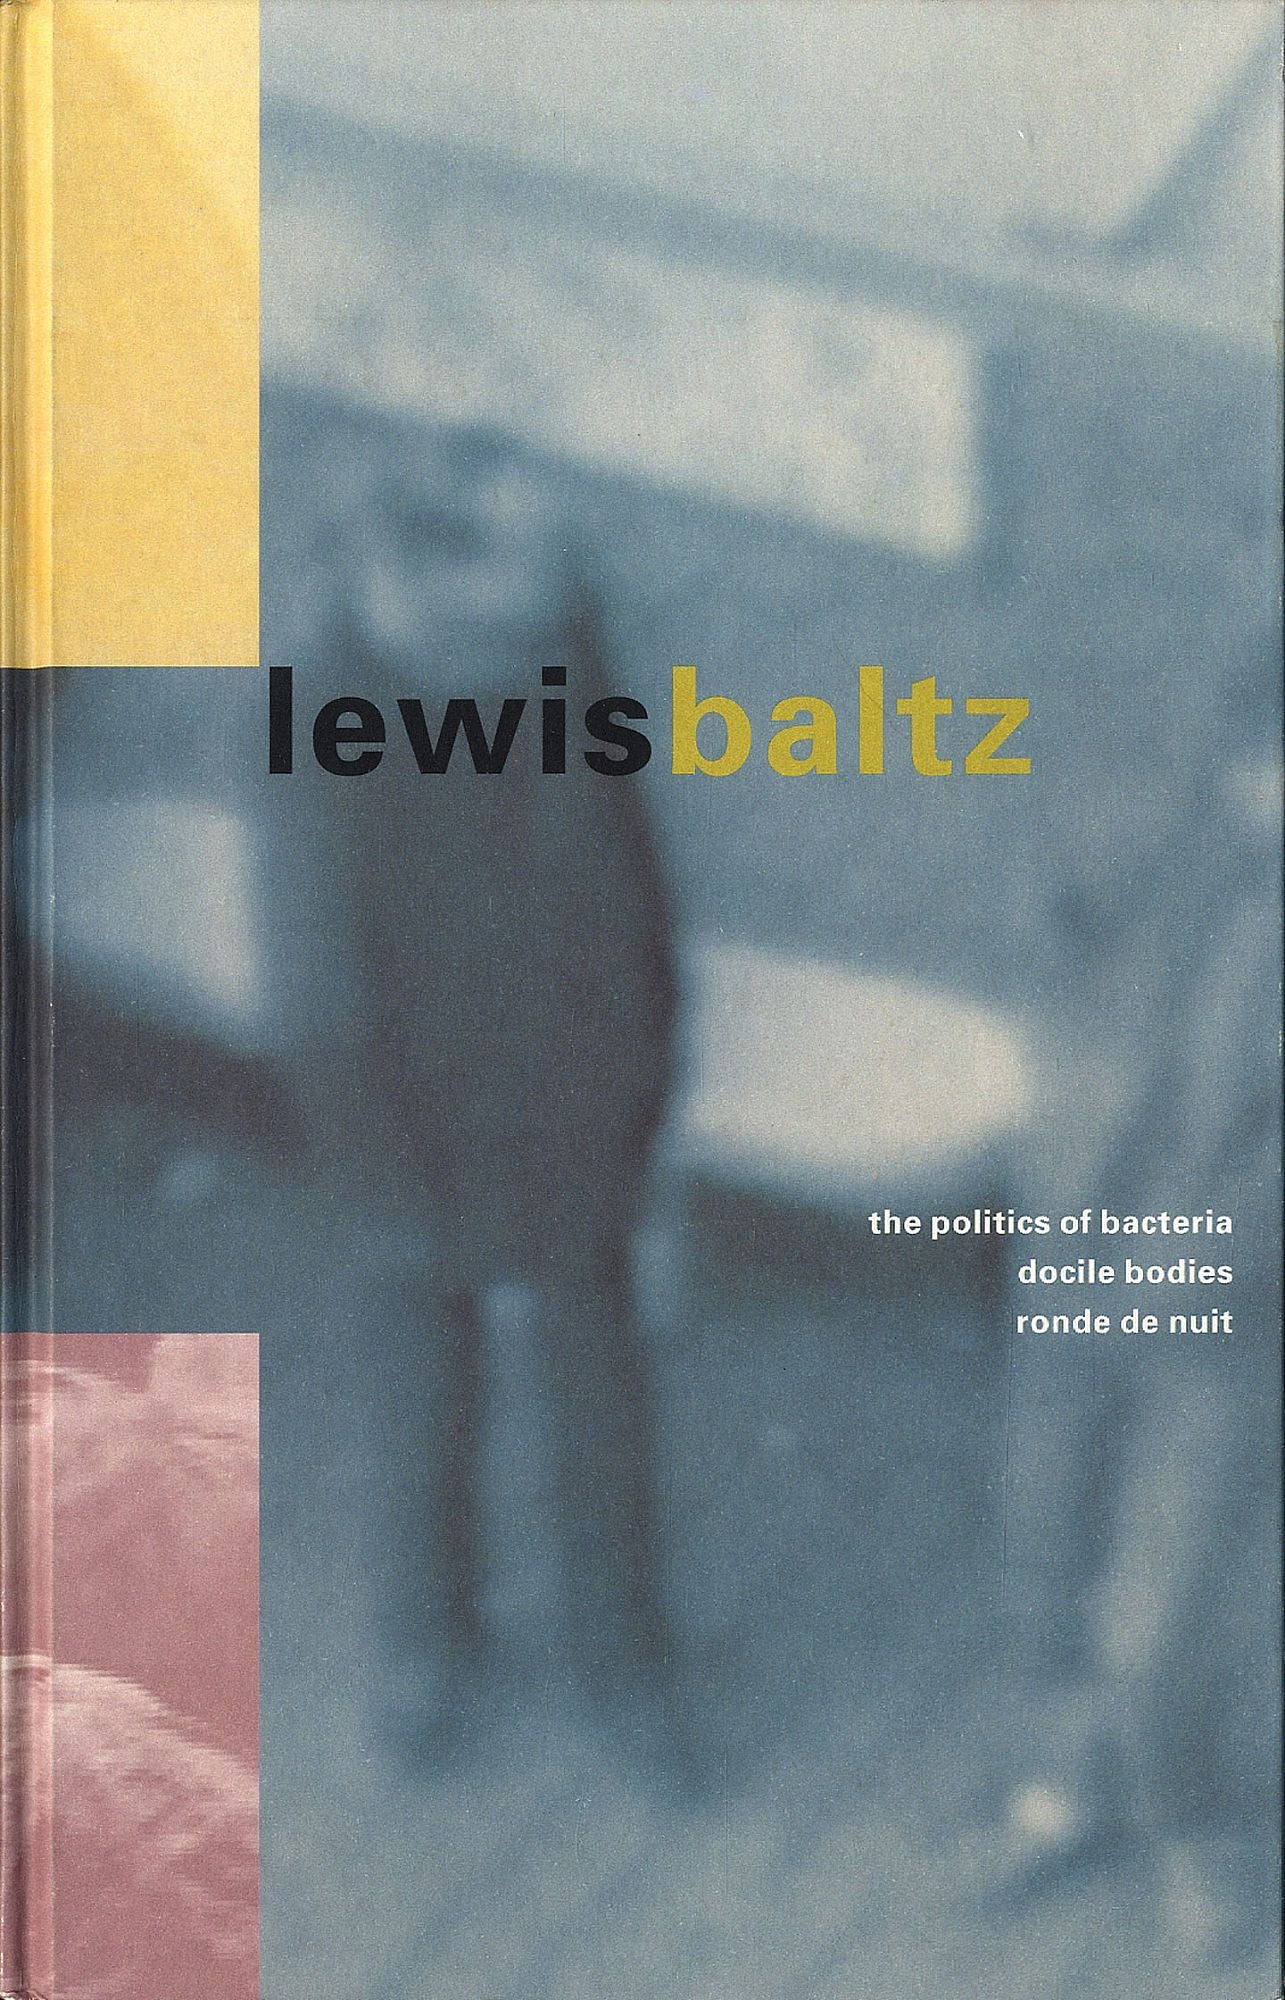 Lewis Baltz: The Politics of Bacteria, Docile Bodies, Ronde de Nuit (MOCA, Los Angeles Exhibition Catalogue) [SIGNED]